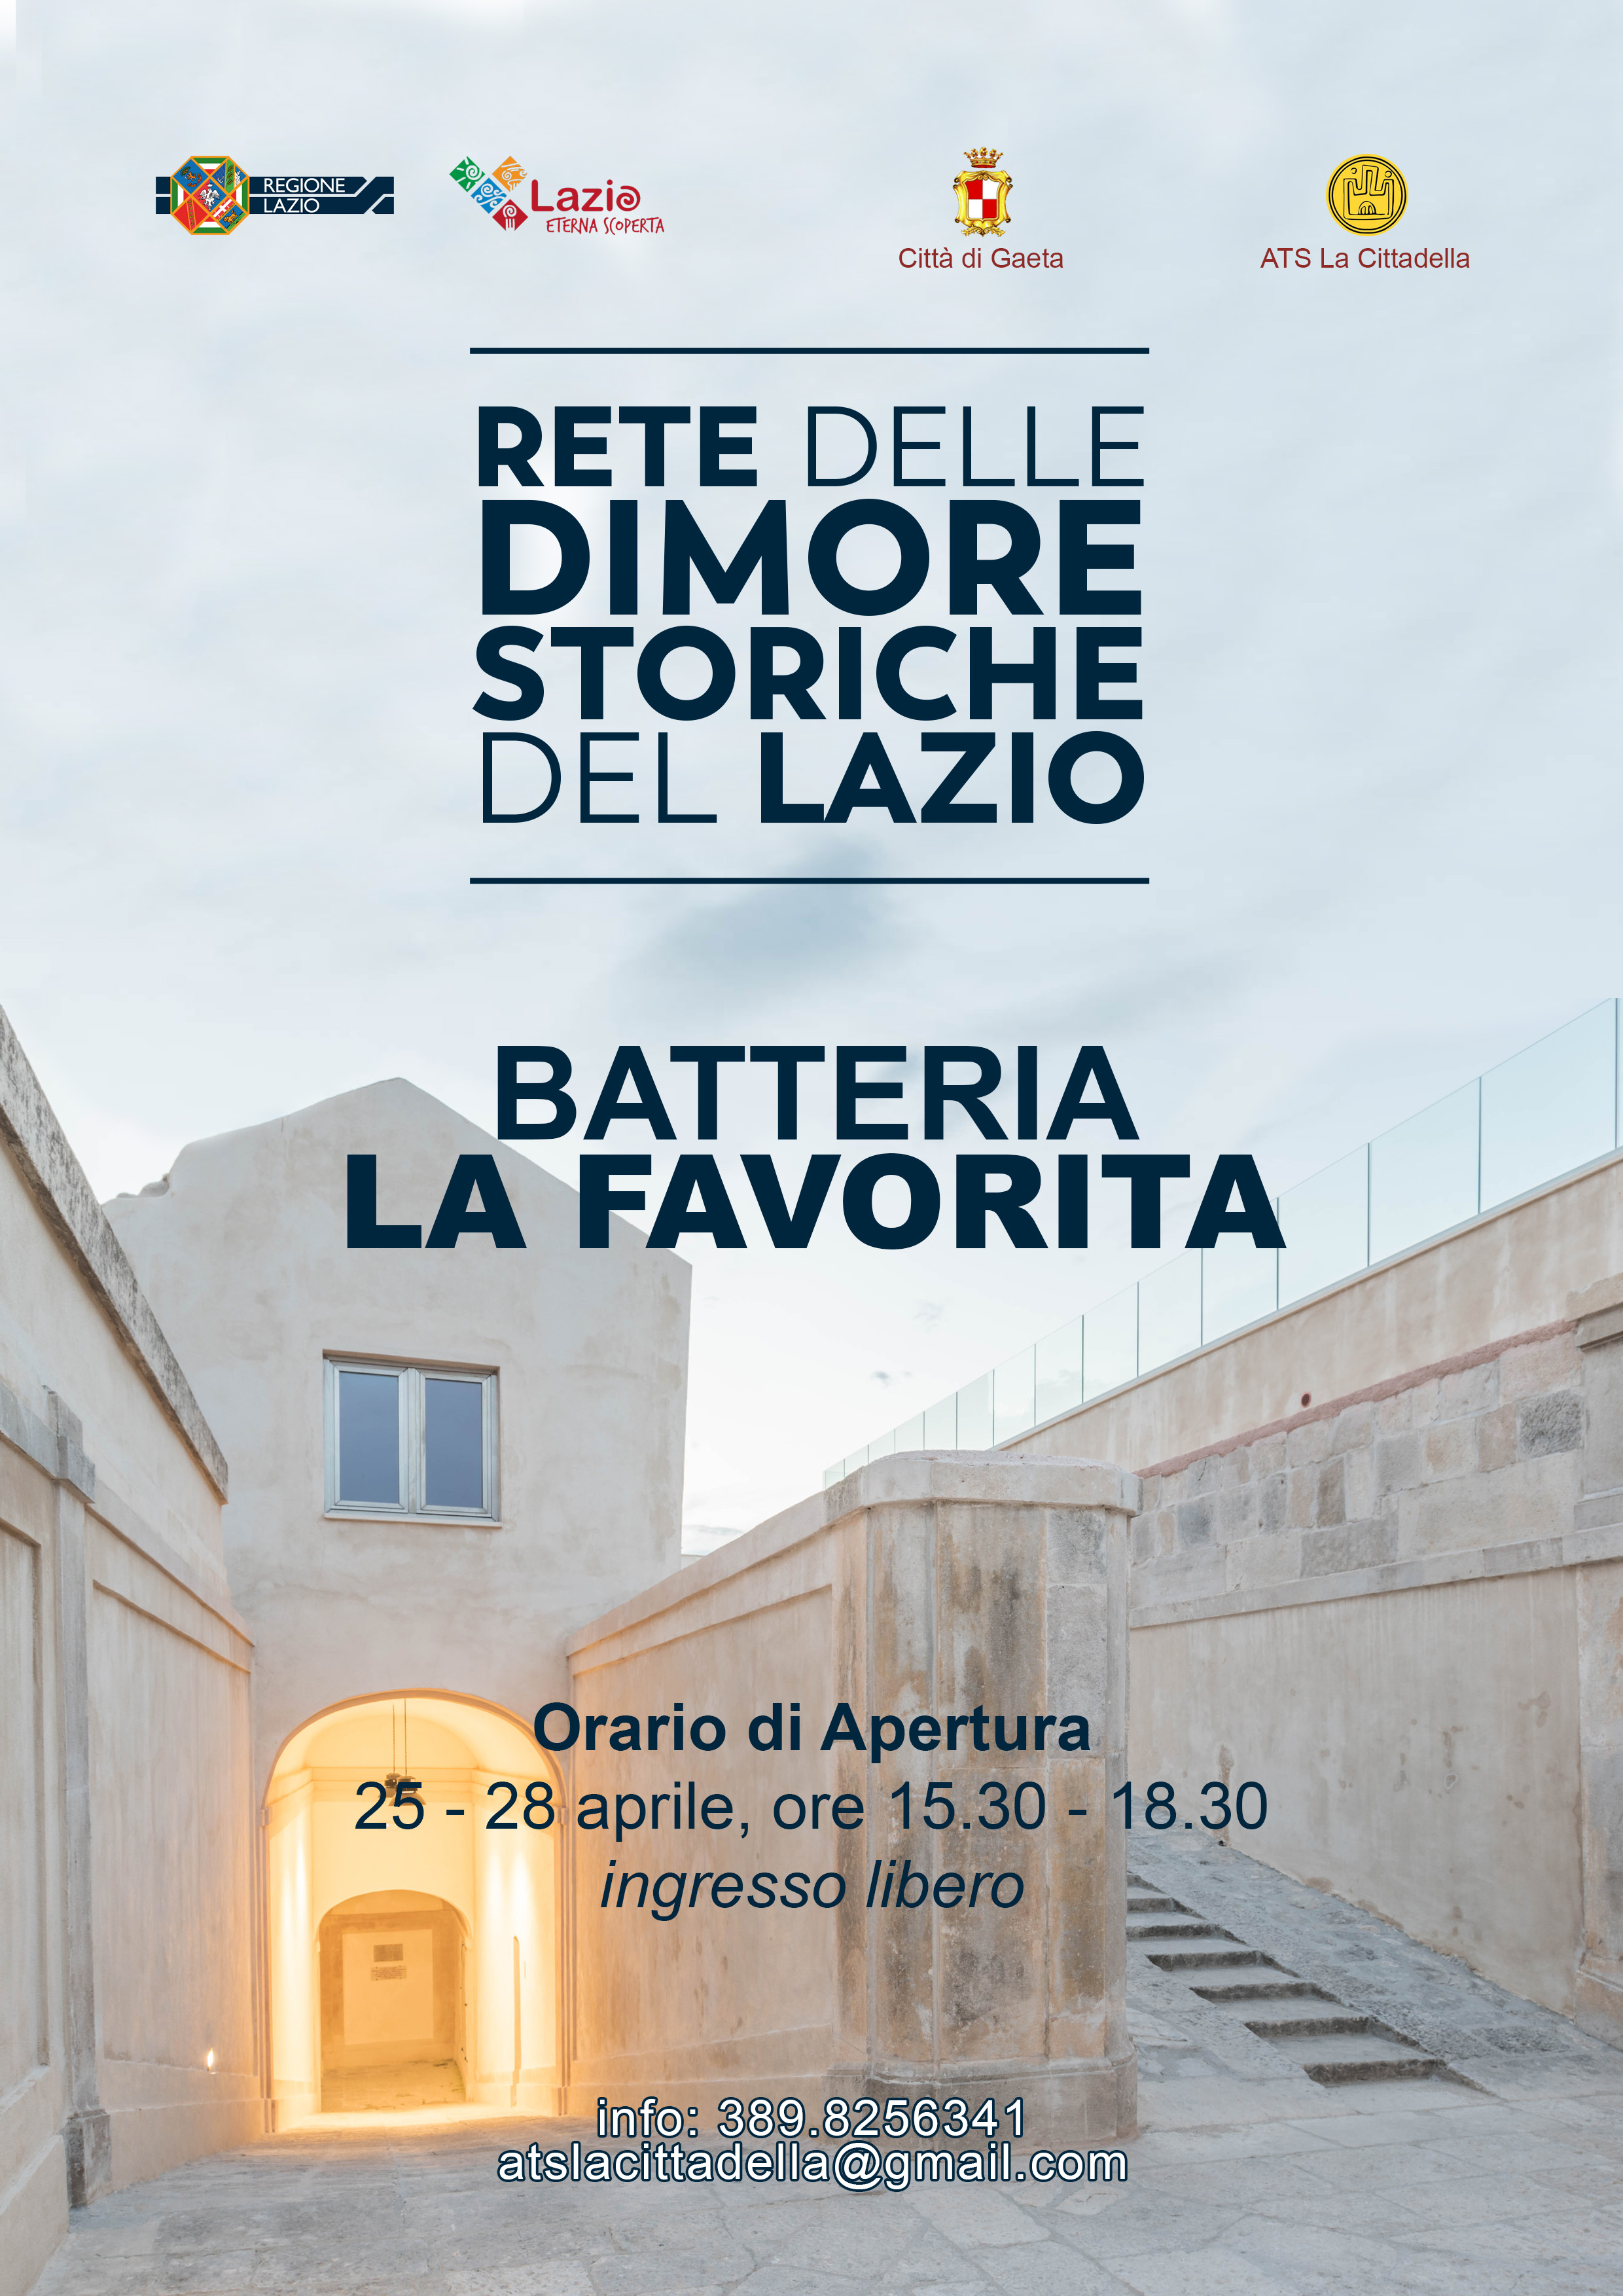 Il Bastione "la Favorita", Dimora storica del Lazio, apre al pubblico durante il ponte del 25 aprile